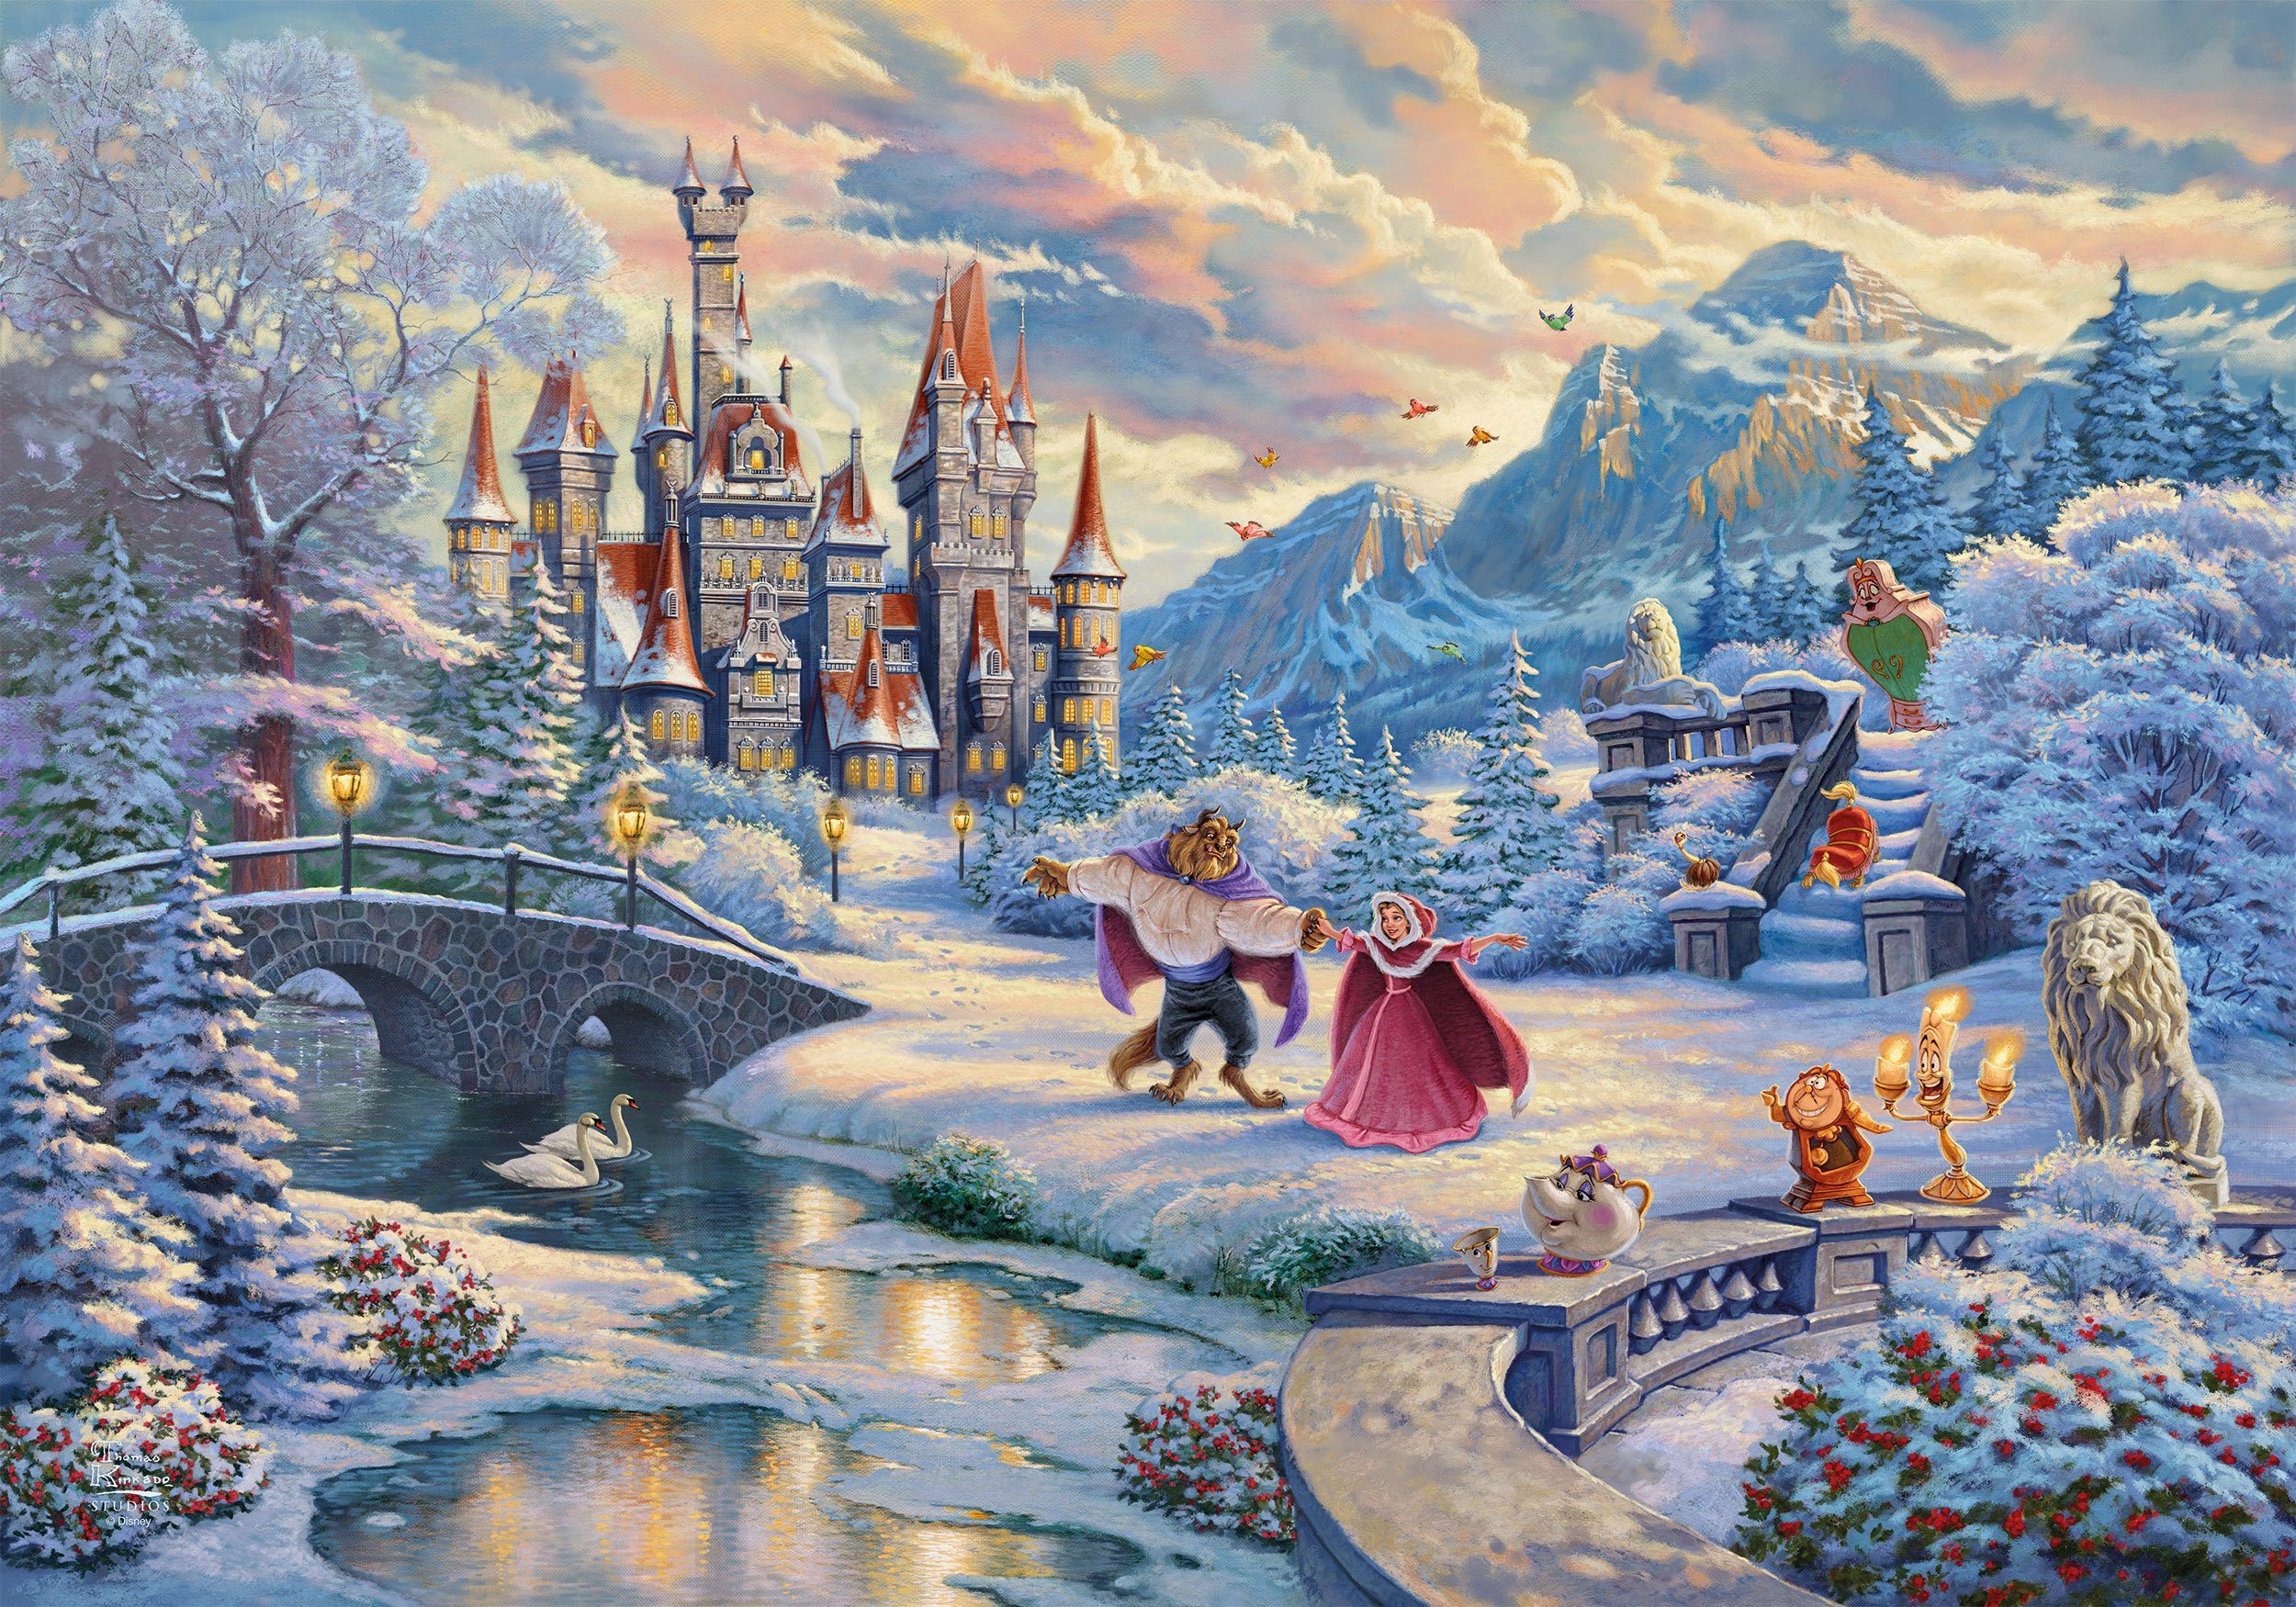 Schmidt Spiele Пазлы Disney, Die Schöne und das Biest, Zauberhafter Winterabend, 1000 Пазлыteile, Limited Christmas Edition